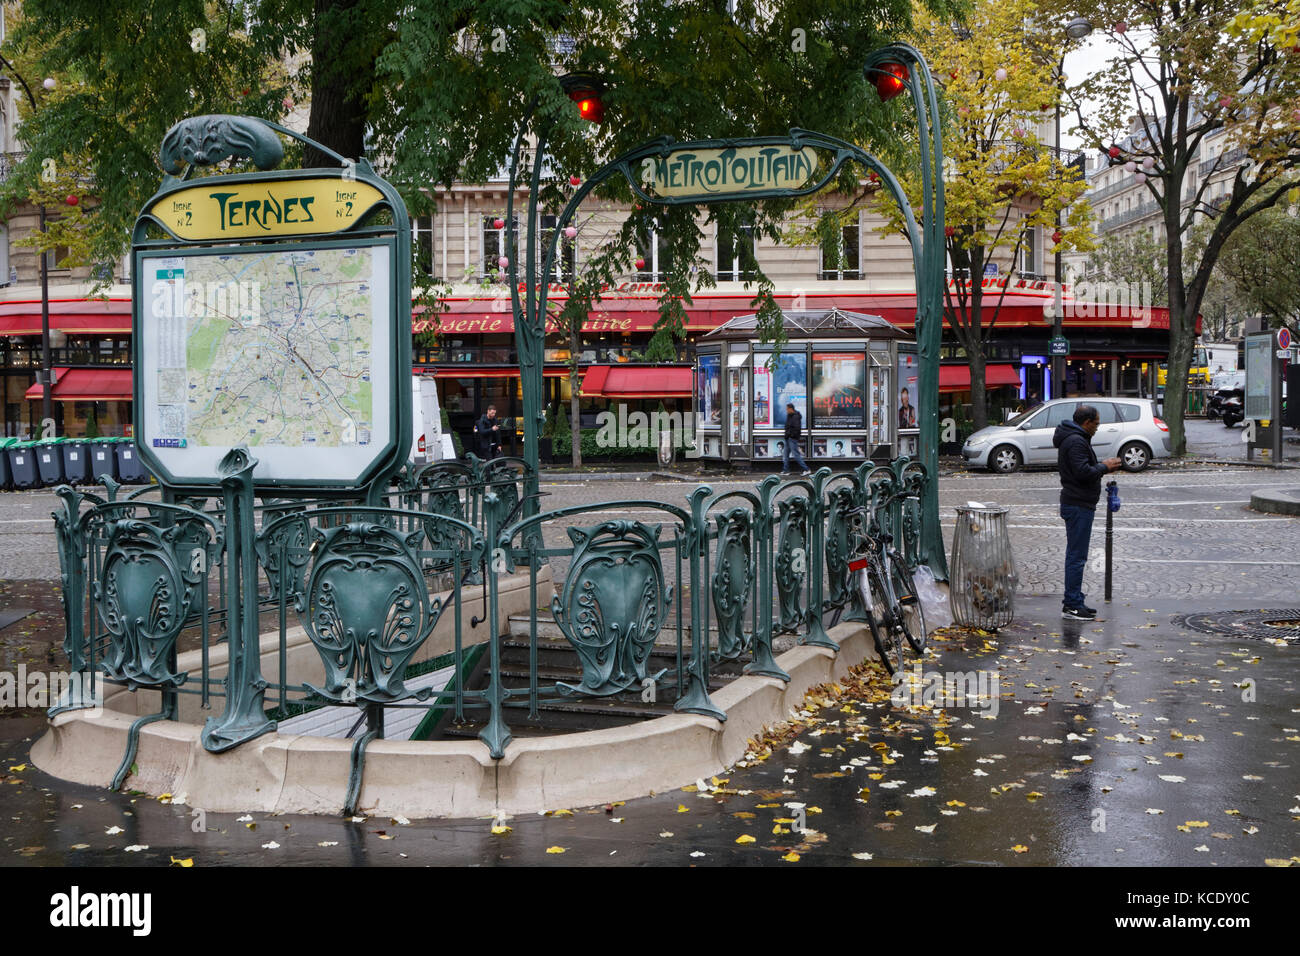 PARÍS, FRANCIA, 15 de noviembre de 2016 : Estación de metro en Place des Ternes. El metro de París es conocido por su densidad dentro de los límites de la ciudad y su una Foto de stock